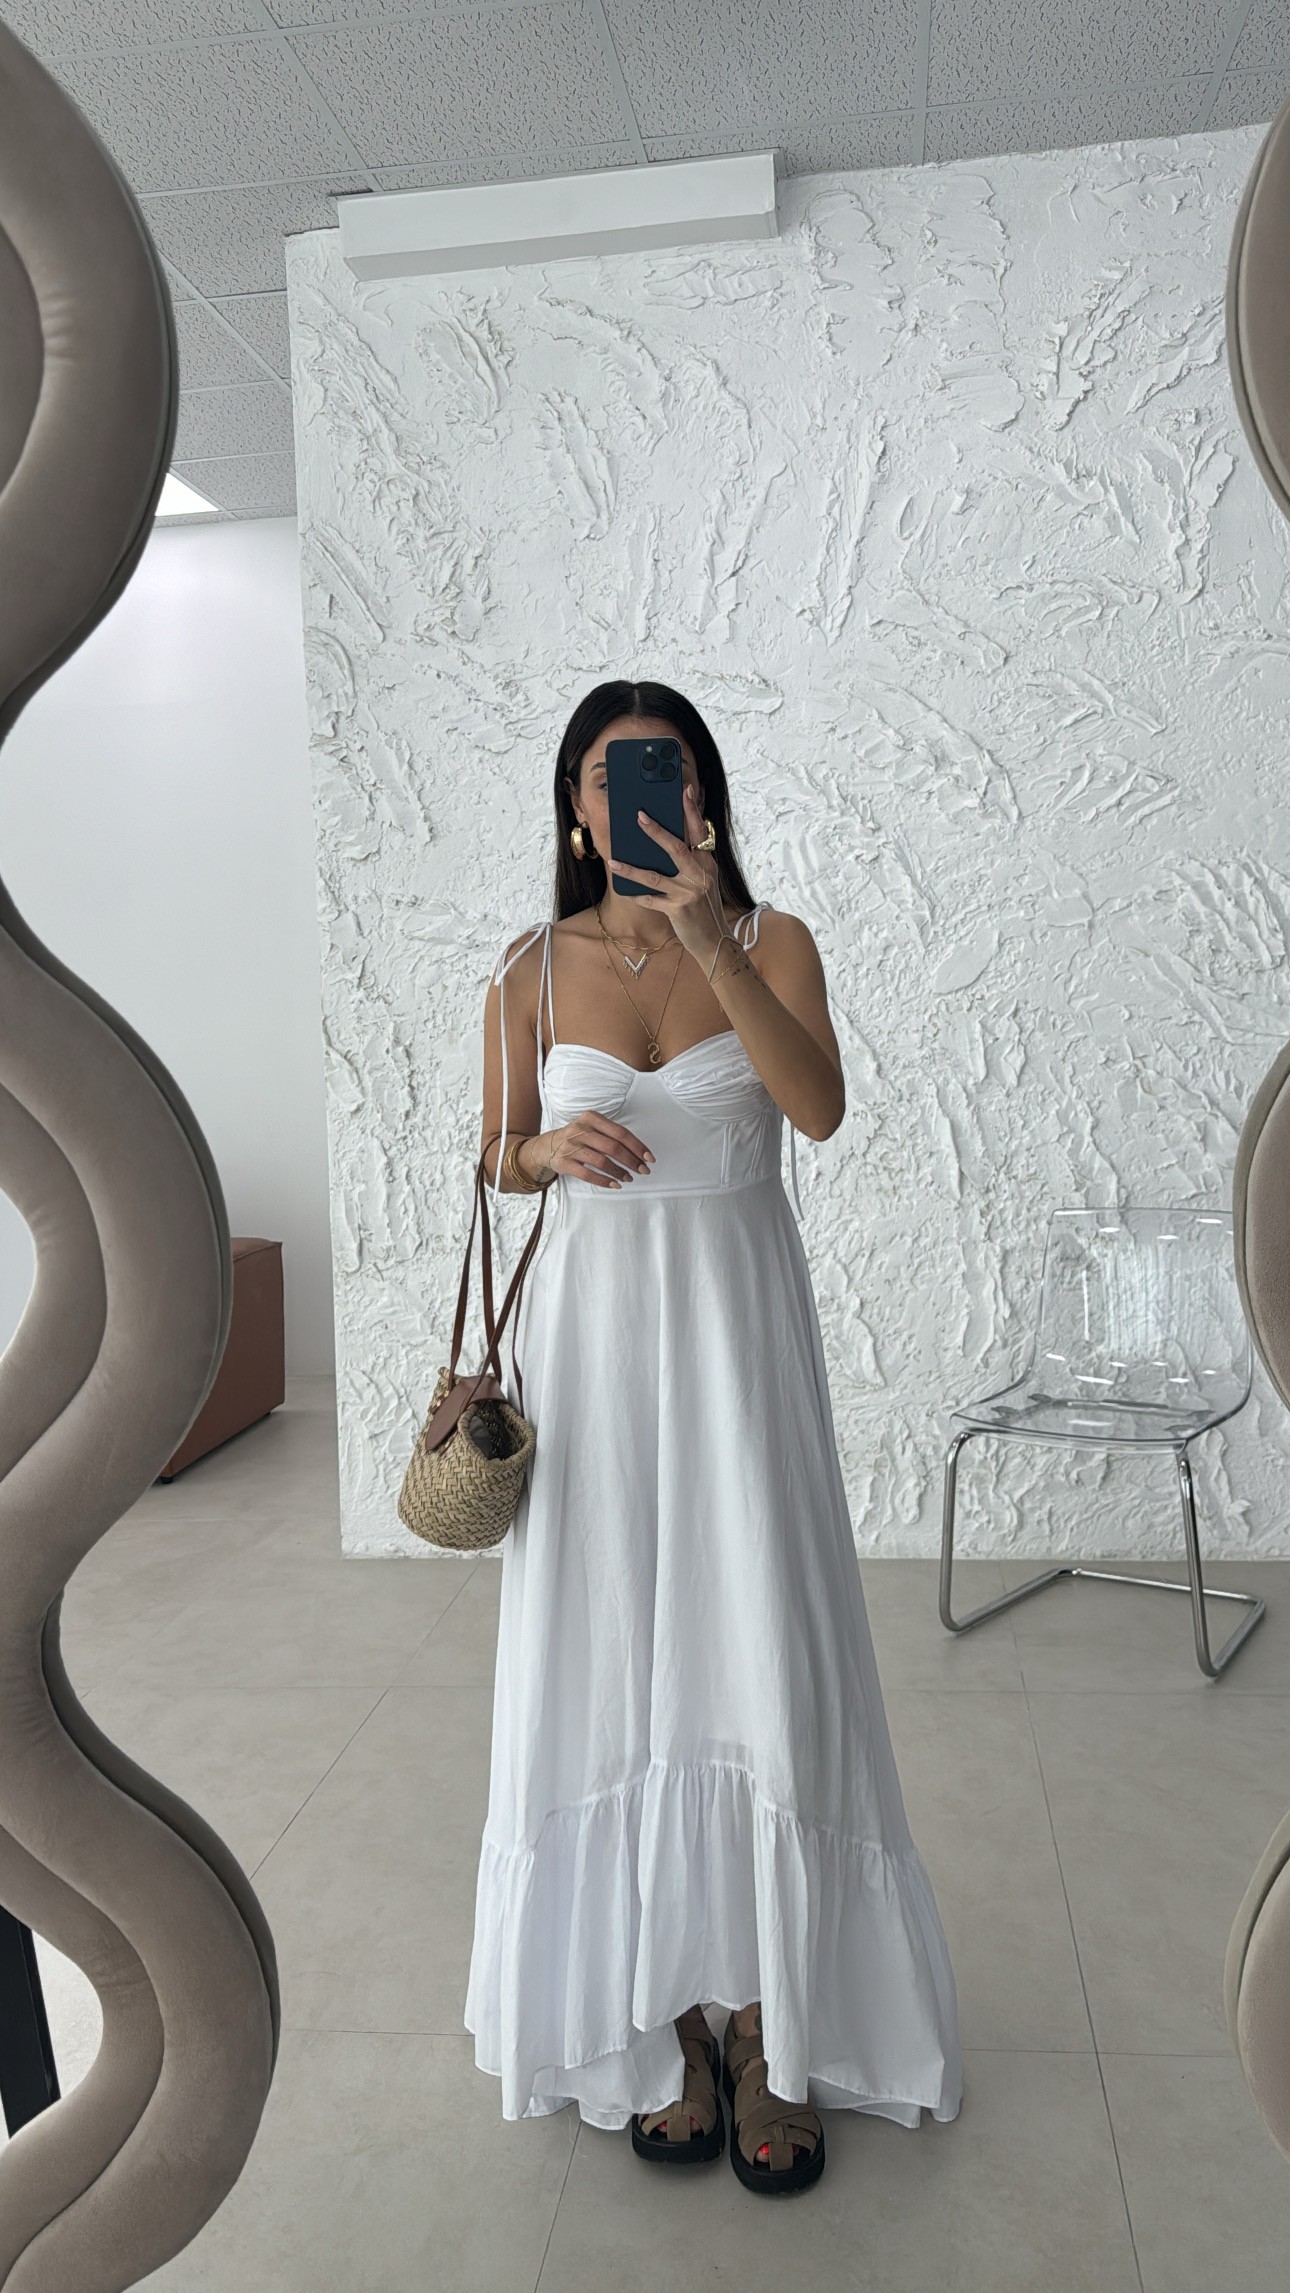 Zr model beyaz fırfırlı poplin elbise